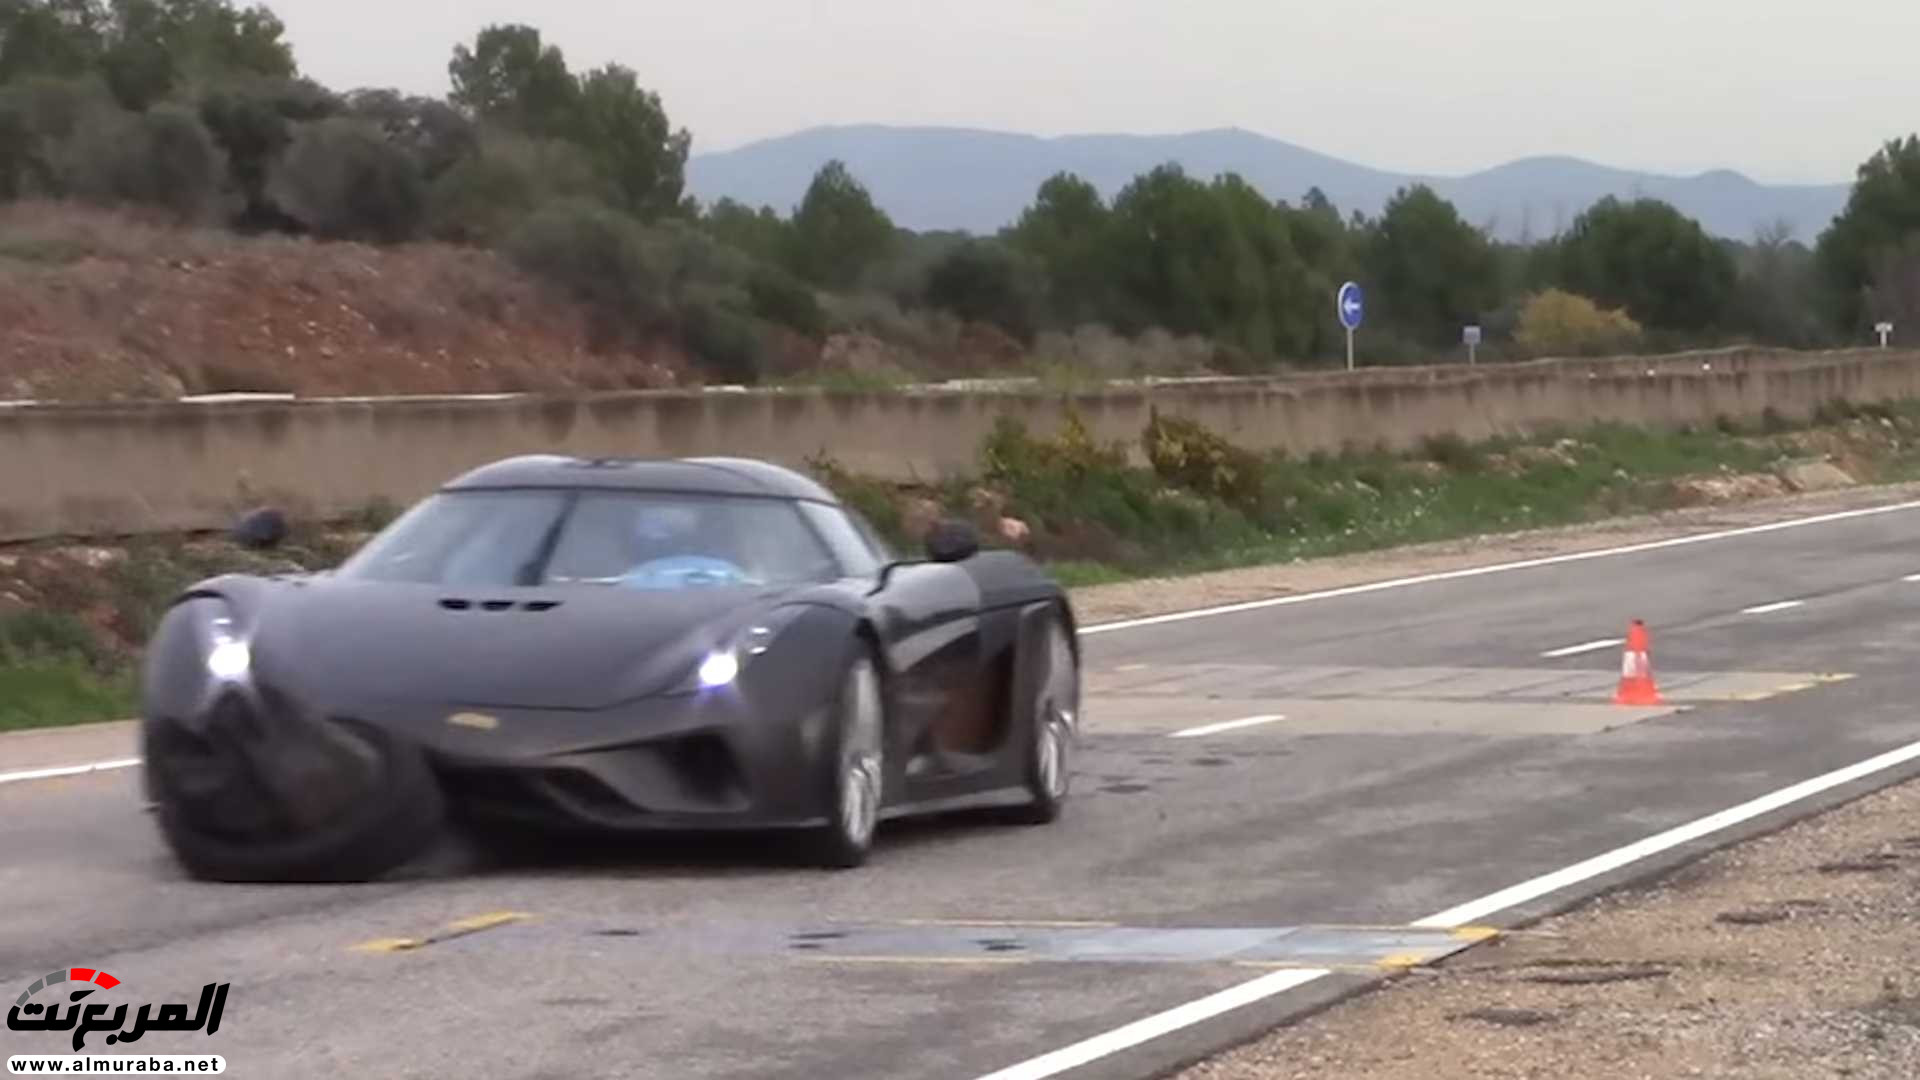 "بالفيديو" اختبار تصادم سيارة كوينيجسيج بقيمة 7.5 مليون ريال! 28